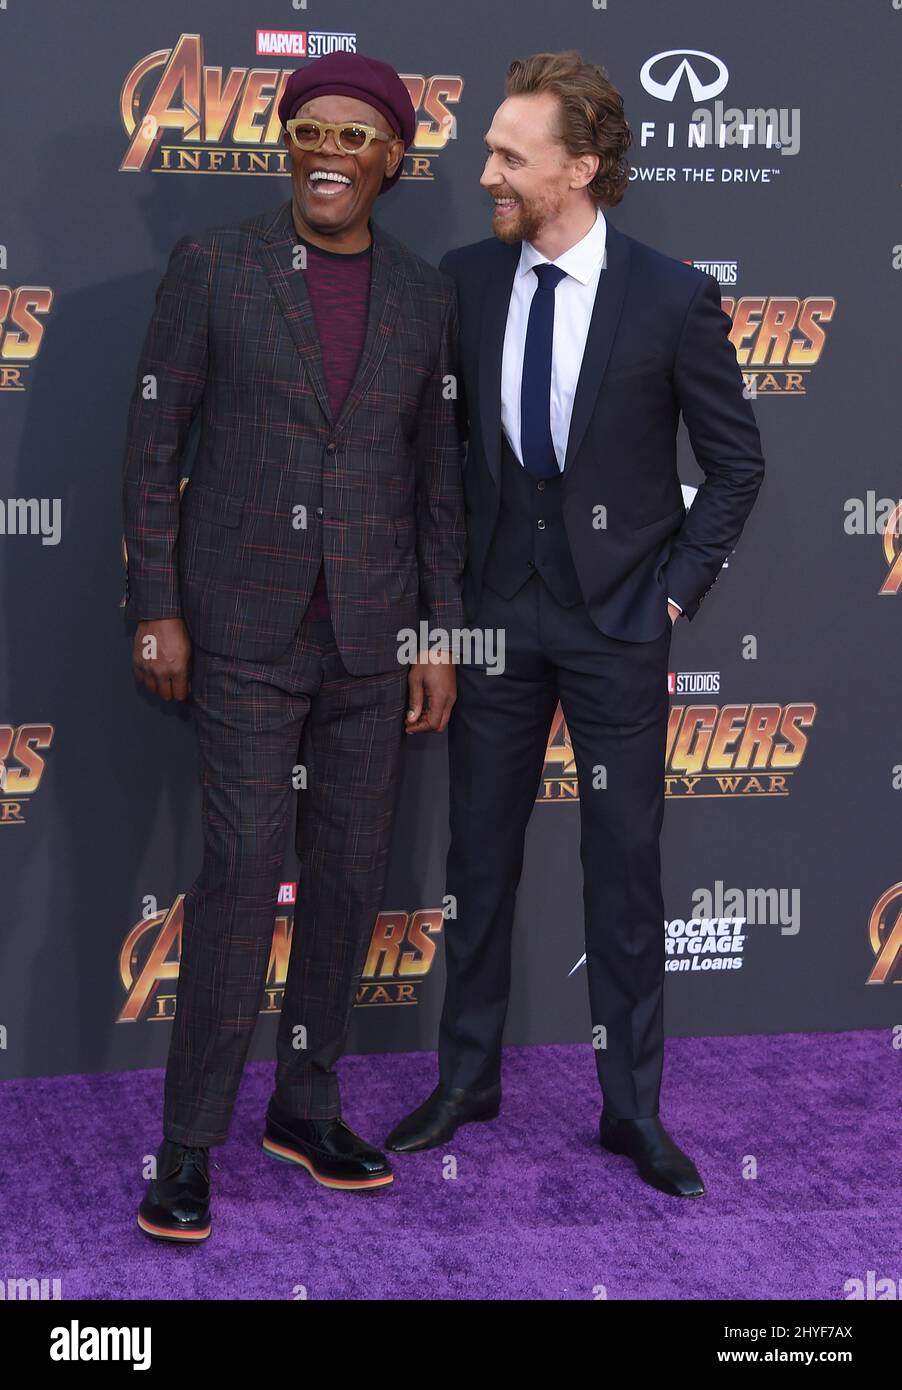 Samuel L. Jackson et Tom Hiddleston assistent à la première mondiale d'Avengers: Infinity War, qui s'est tenue au théâtre El Capitan à Hollywood, en Californie Banque D'Images